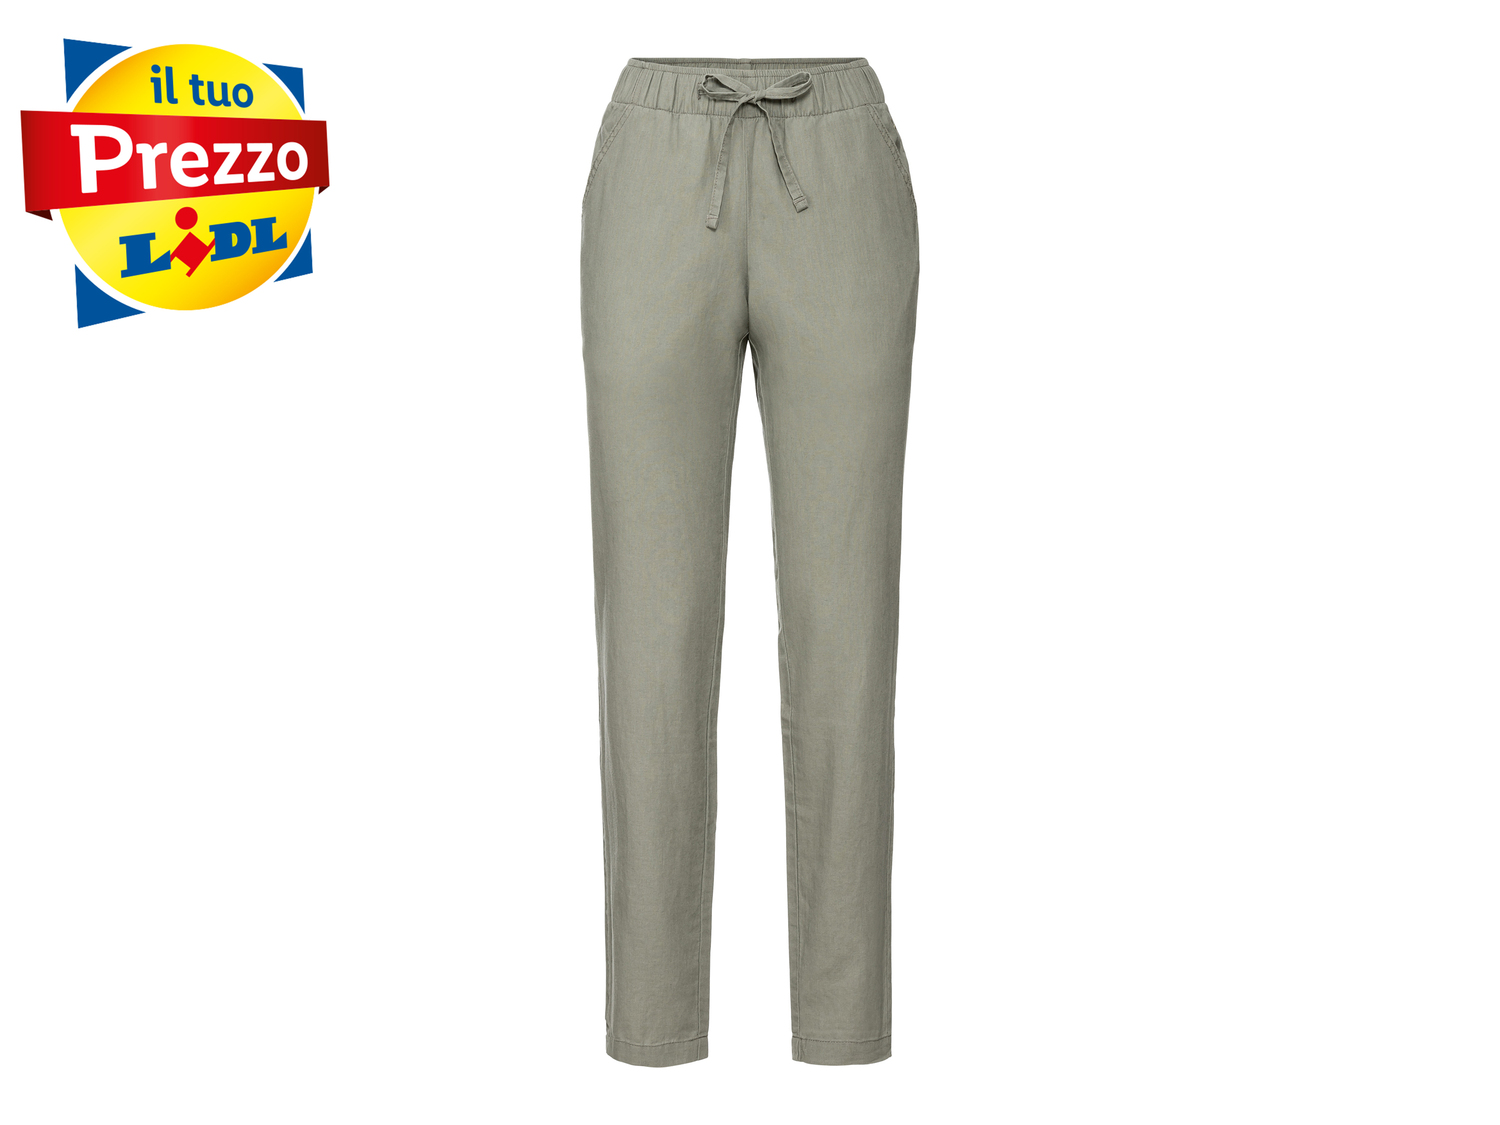 Pantaloni in lino da donna Esmara, prezzo 8.99 € 
Misure: 38-48
Taglie disponibili

Caratteristiche

- ...